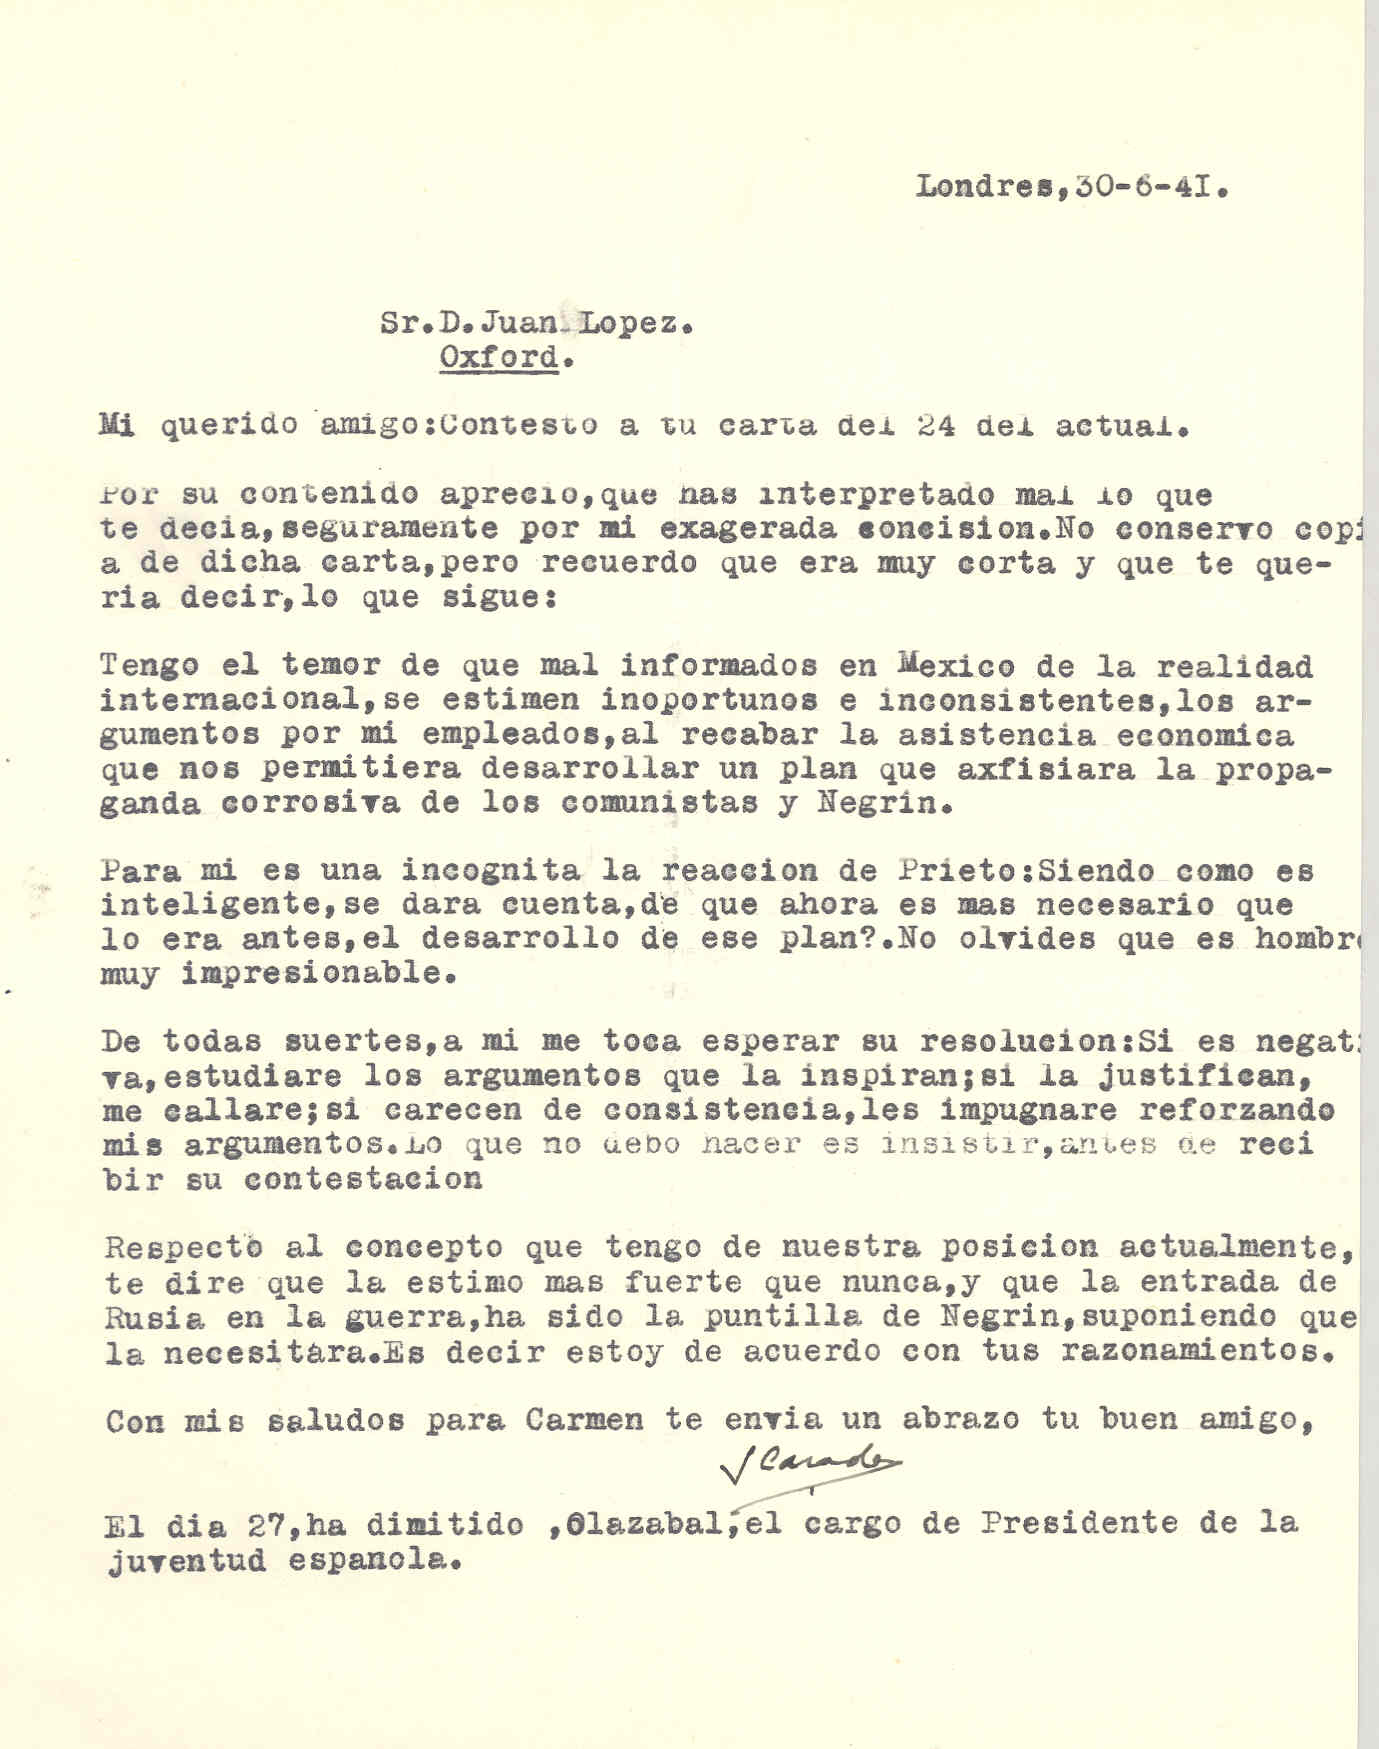 Carta de Segismundo Casado en la que expone su acuerdo con los razonamientos de Juan López sobre la entrada de Rusia en guerra.